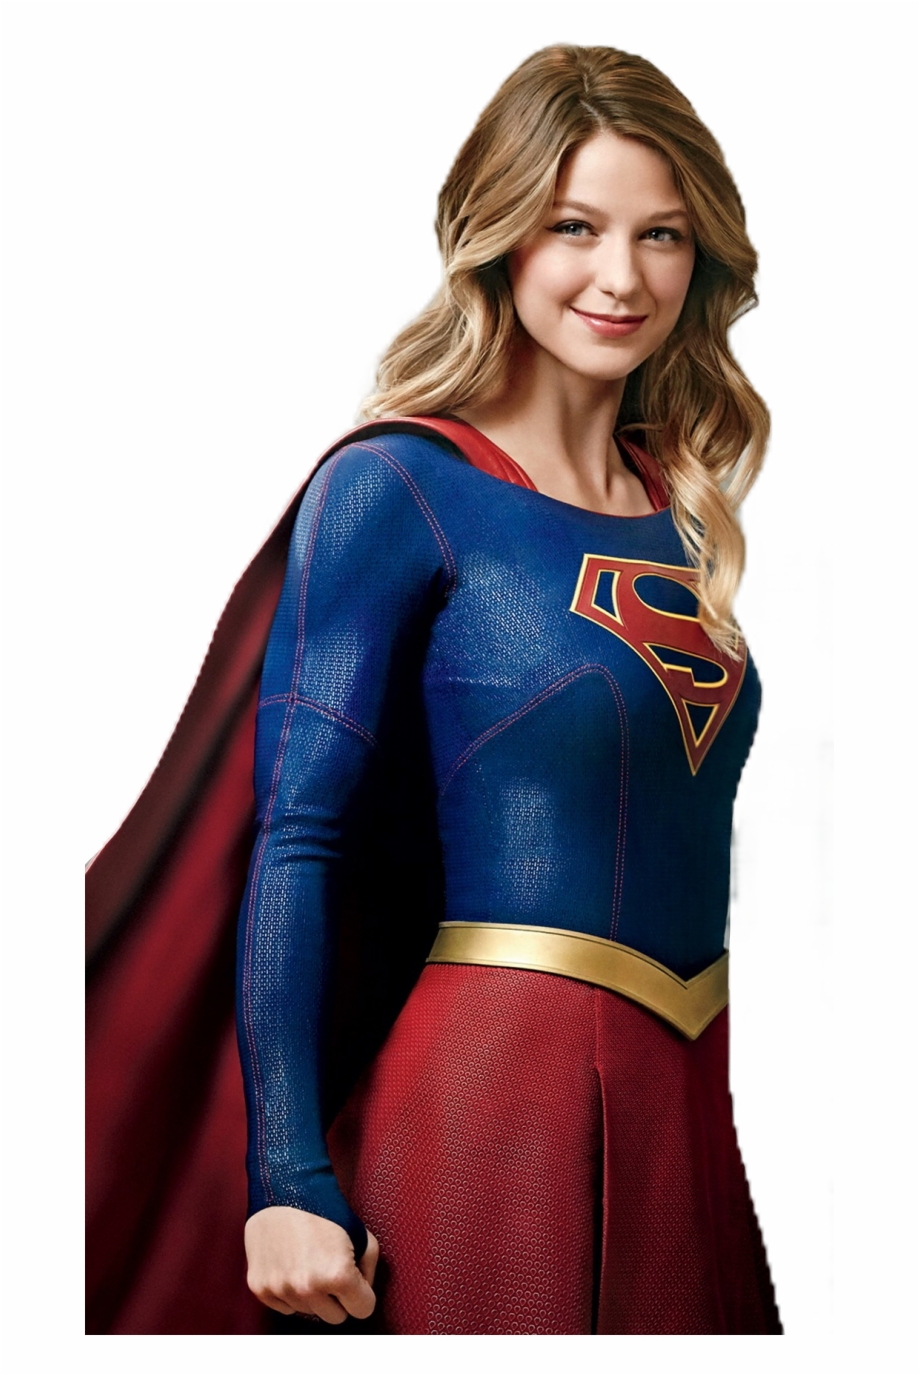 Supergirl Feautureme Melissabenoist Melissa Benoist Melissa Benoist Super